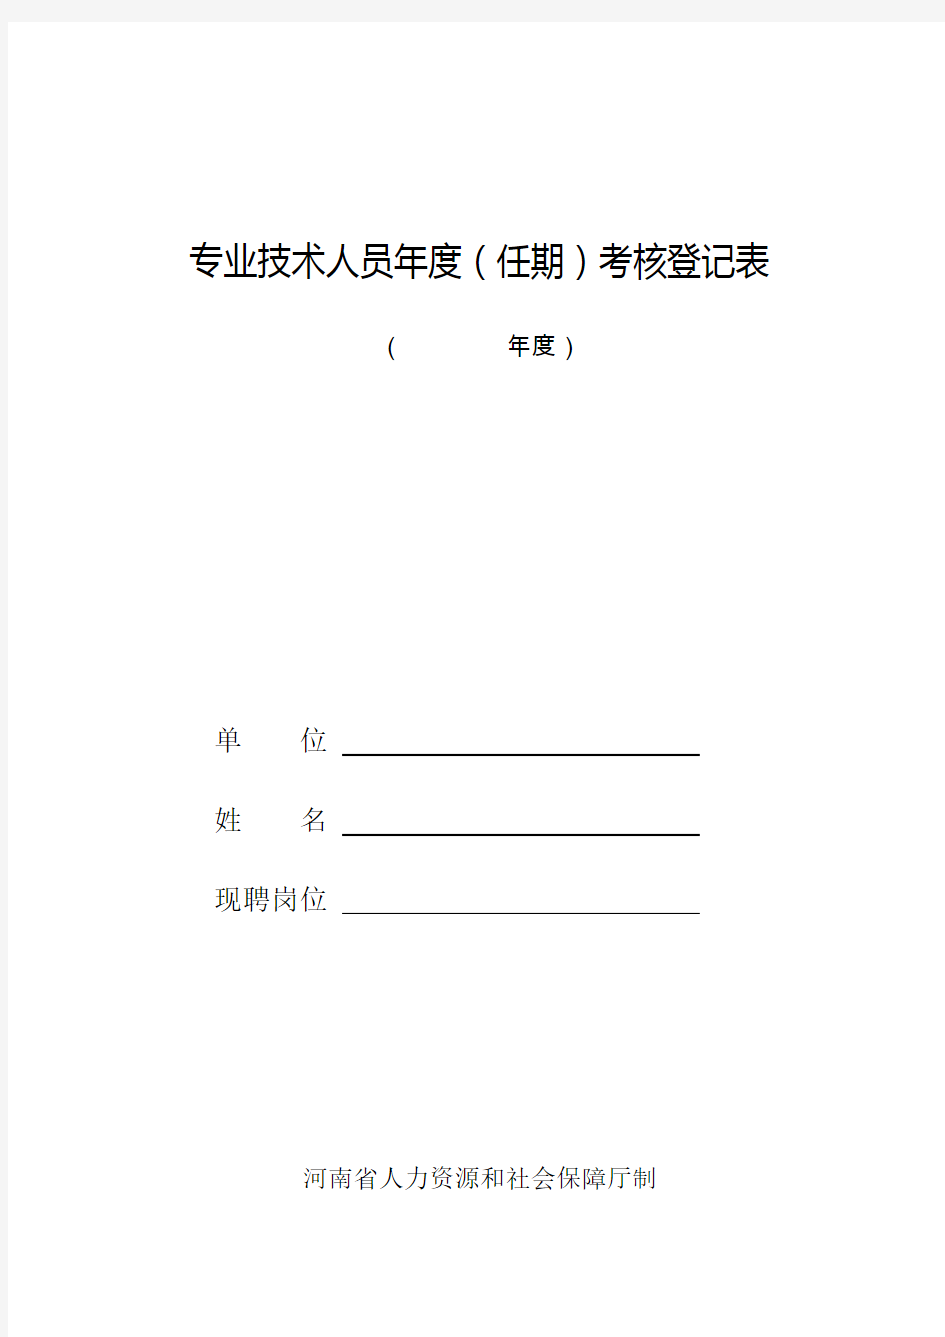 河南省专业技术人员年度(任期)考核登记表